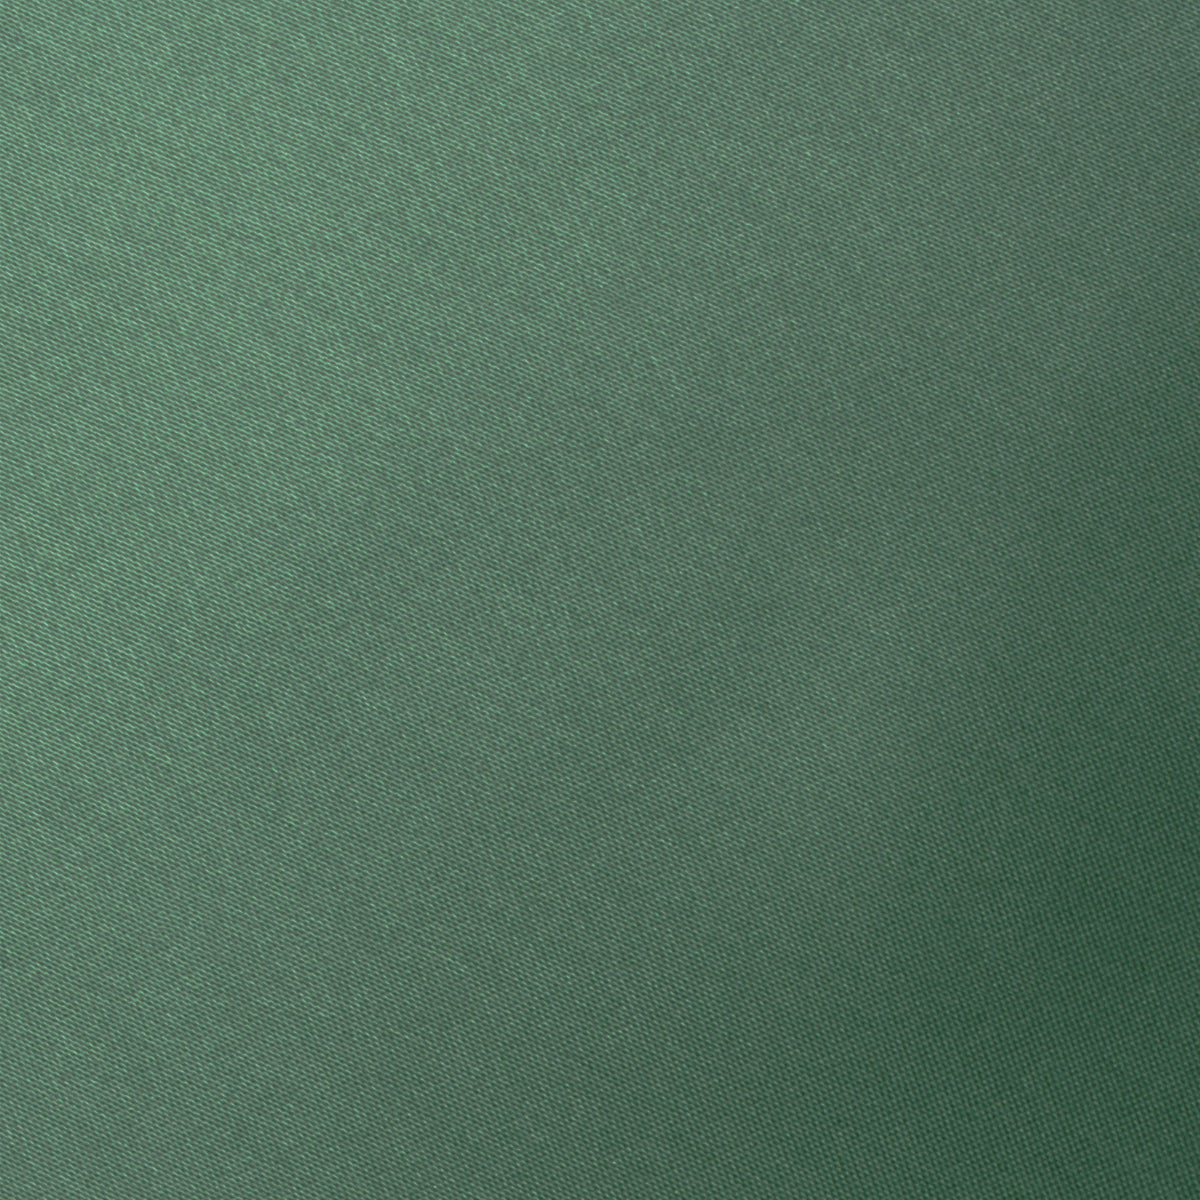 Viridian Green Satin Fabric Swatch